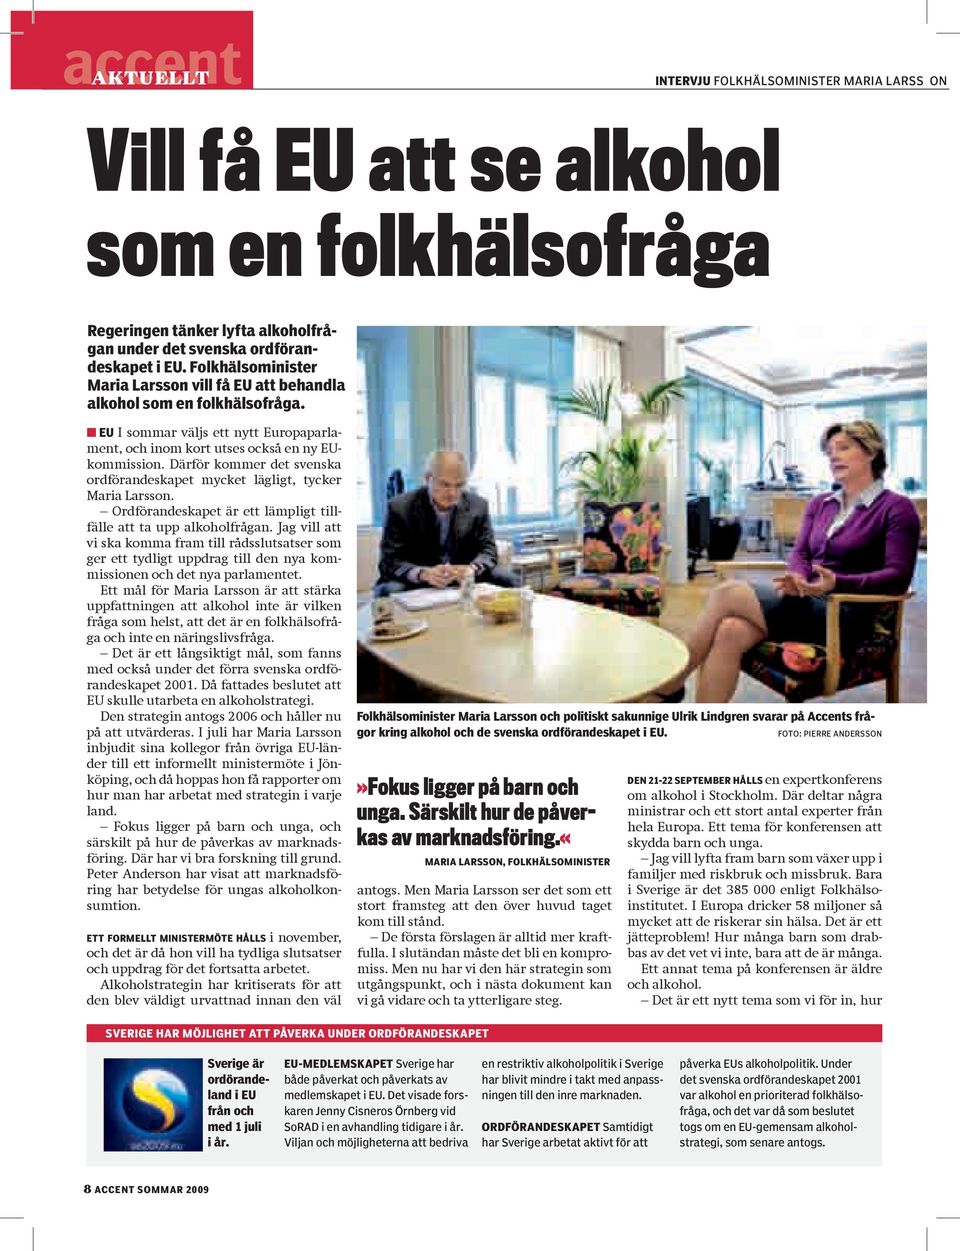 Därför kommer det svenska ordförandeskapet mycket lägligt, tycker Maria Larsson. Ordförandeskapet är ett lämpligt tillfälle att ta upp alkoholfrågan.